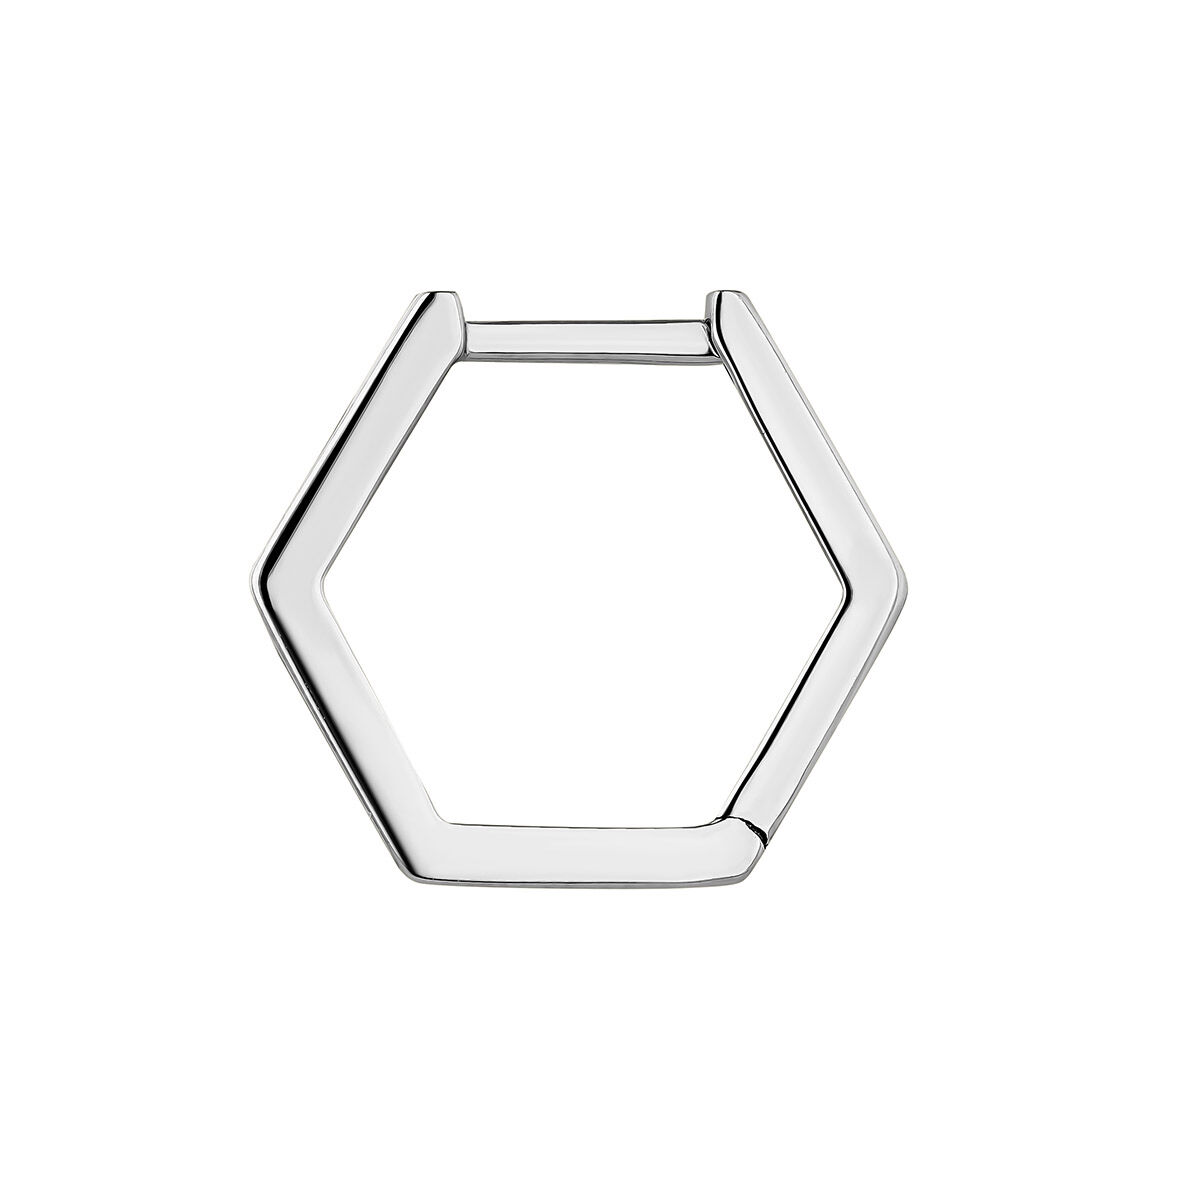 Single 9kt white gold hexagonal hoop earring, J05129-01-H, hi-res